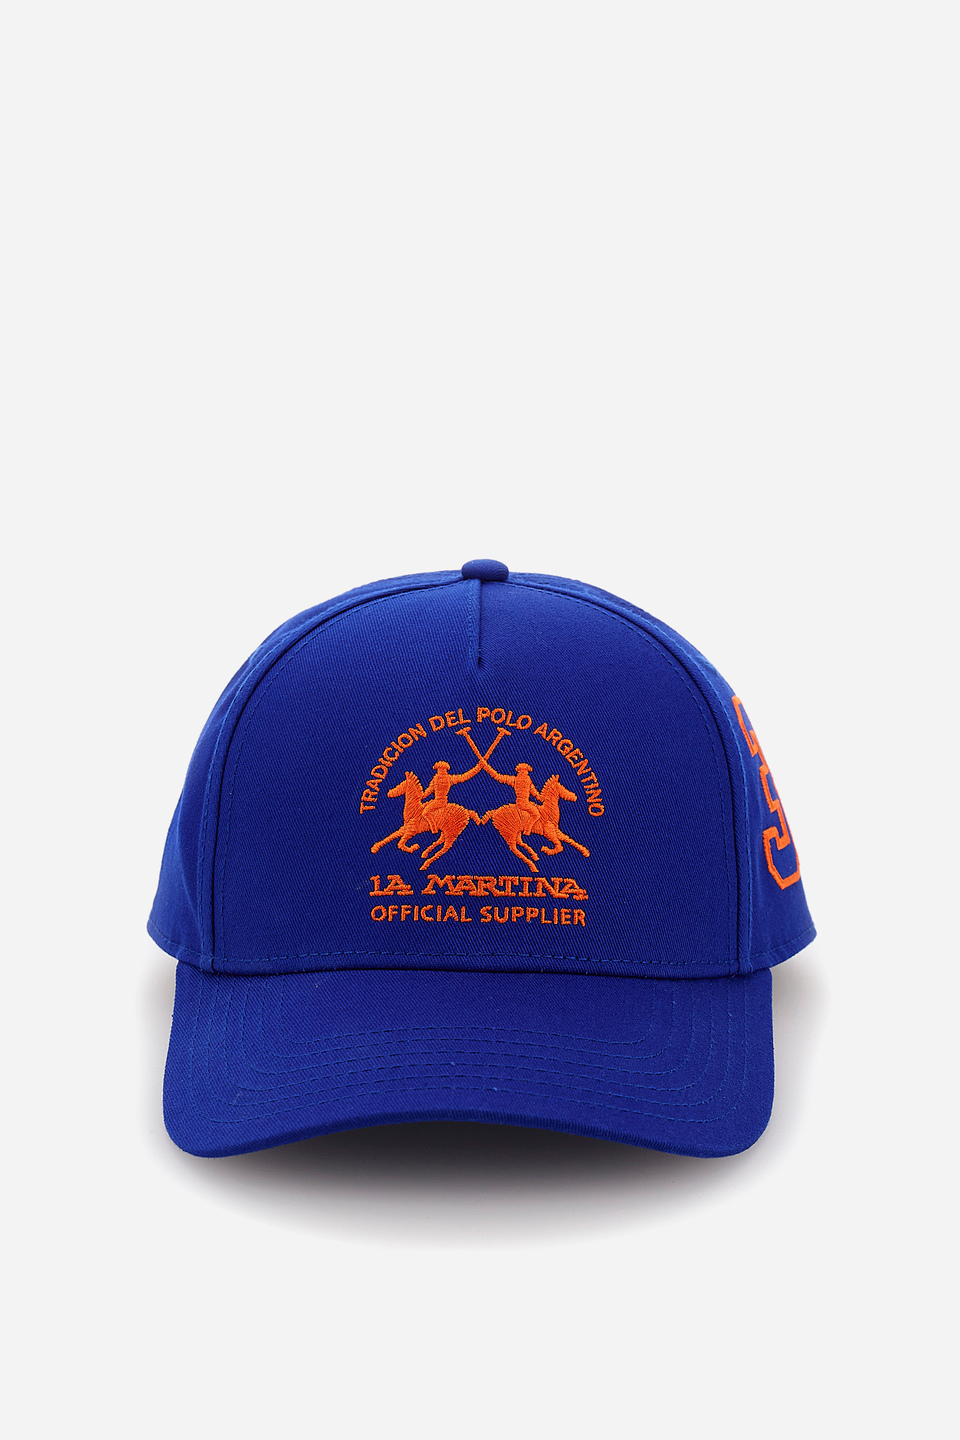 baseball caps online